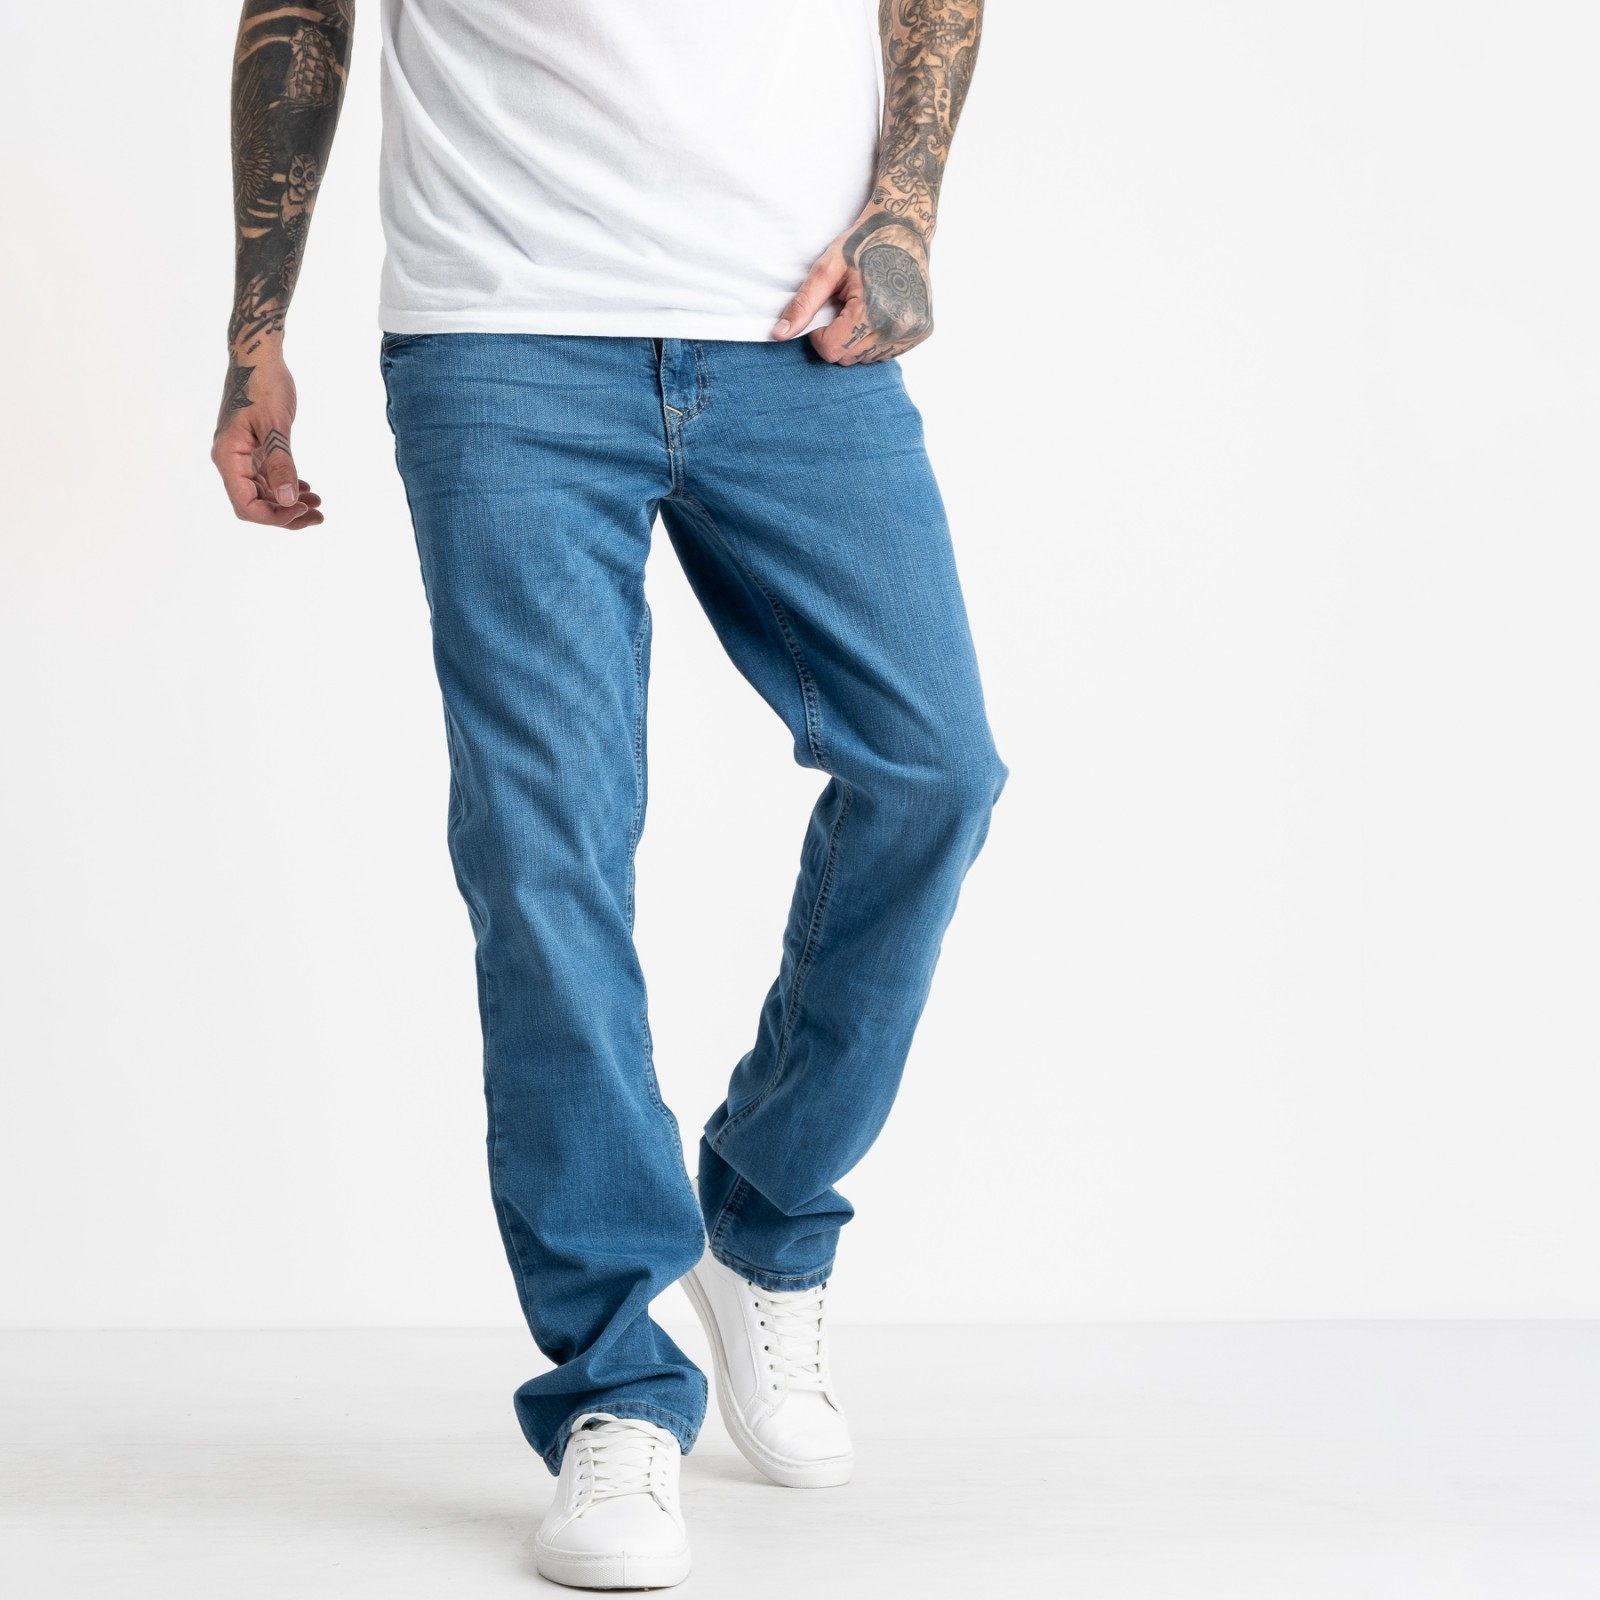 1943 Nescoly джинсы мужские голубые стрейчевые (8 ед. размеры: 30.32.34/2.36/2.38.40) 